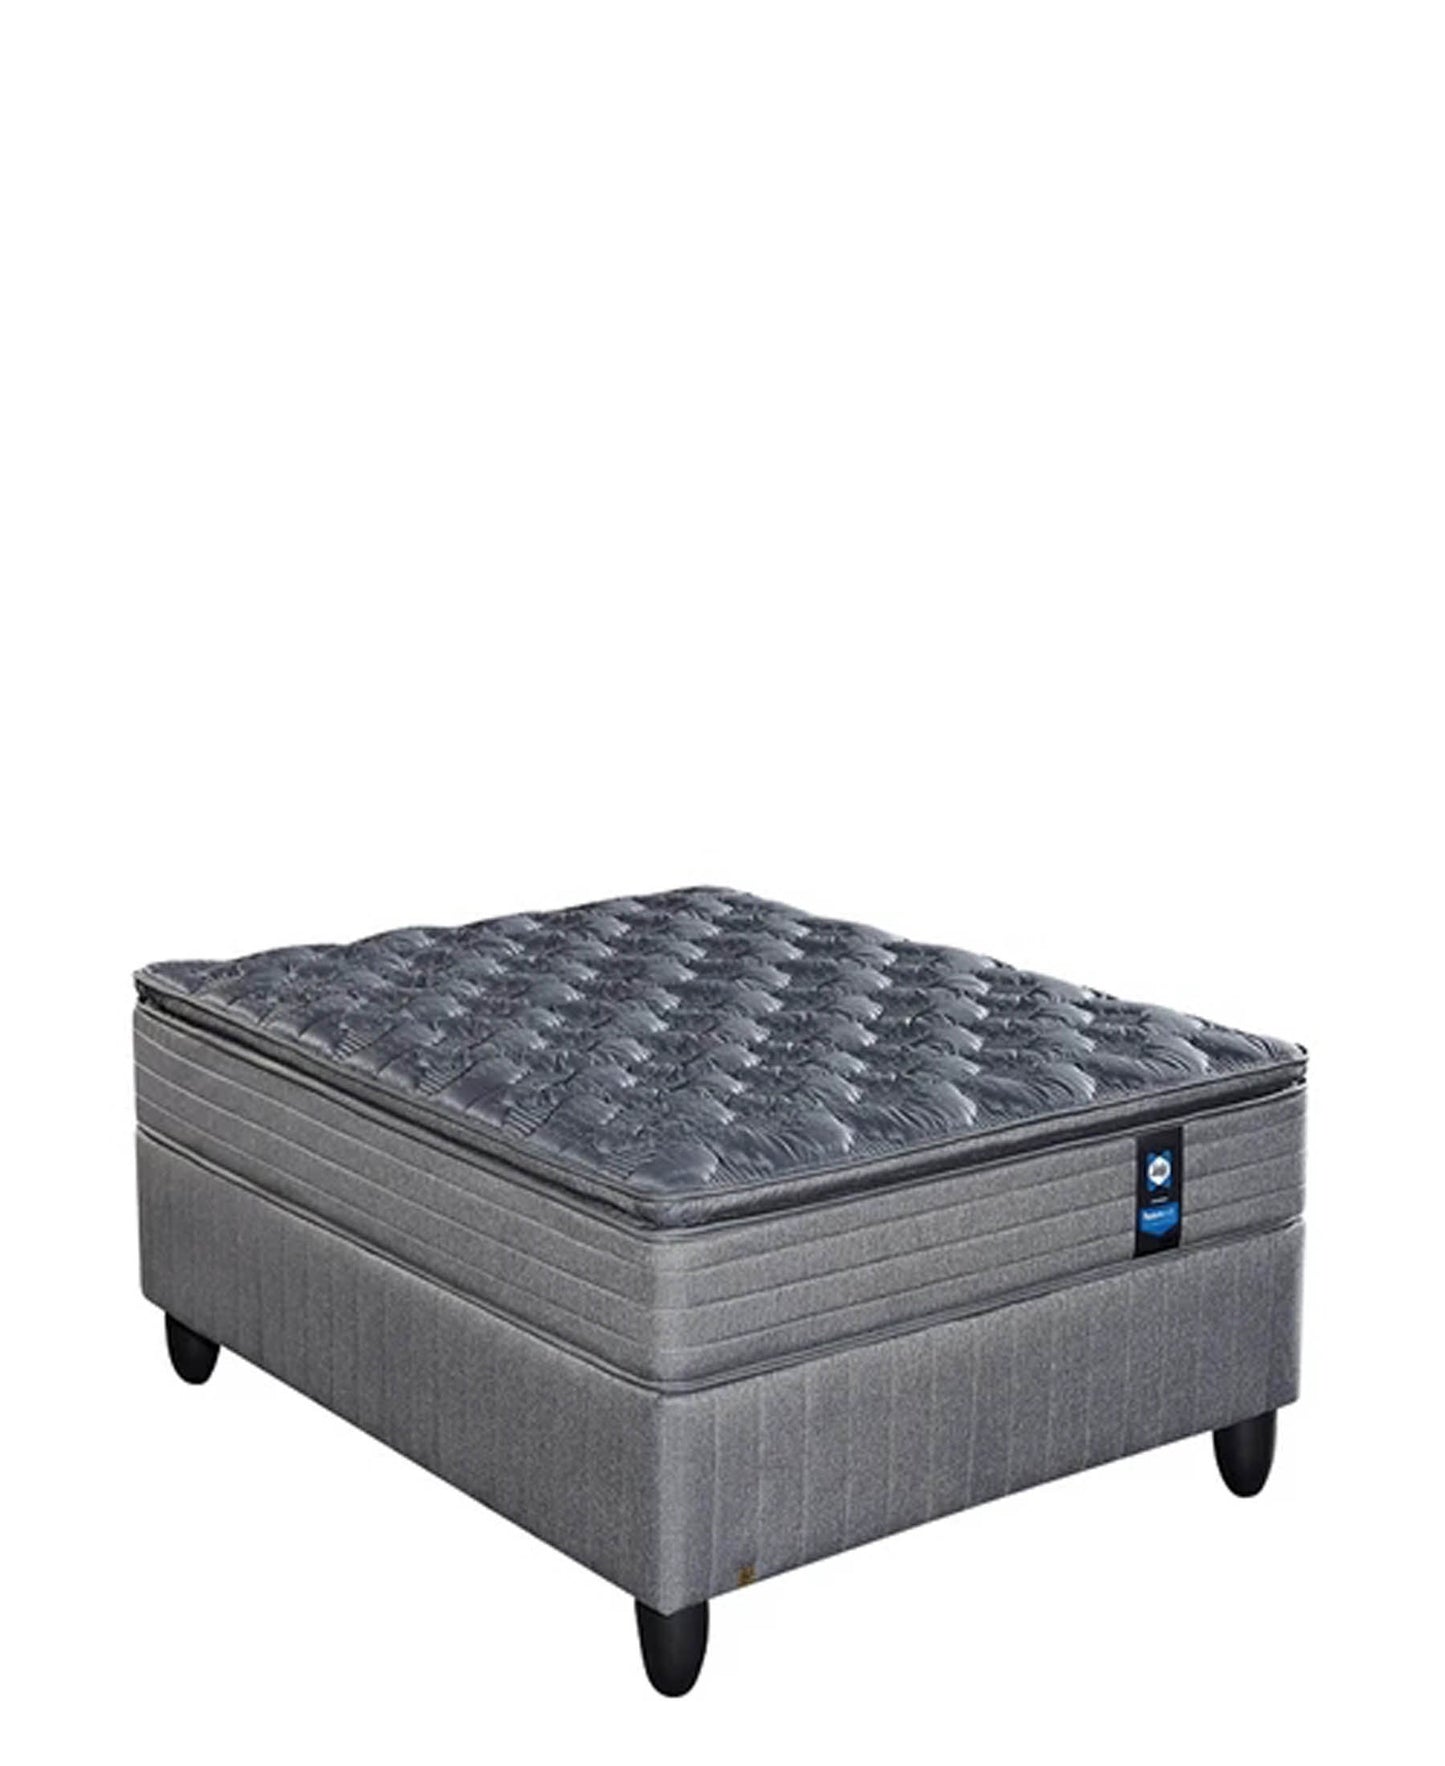 Sealy Posturepedic Imperial Medium Bed